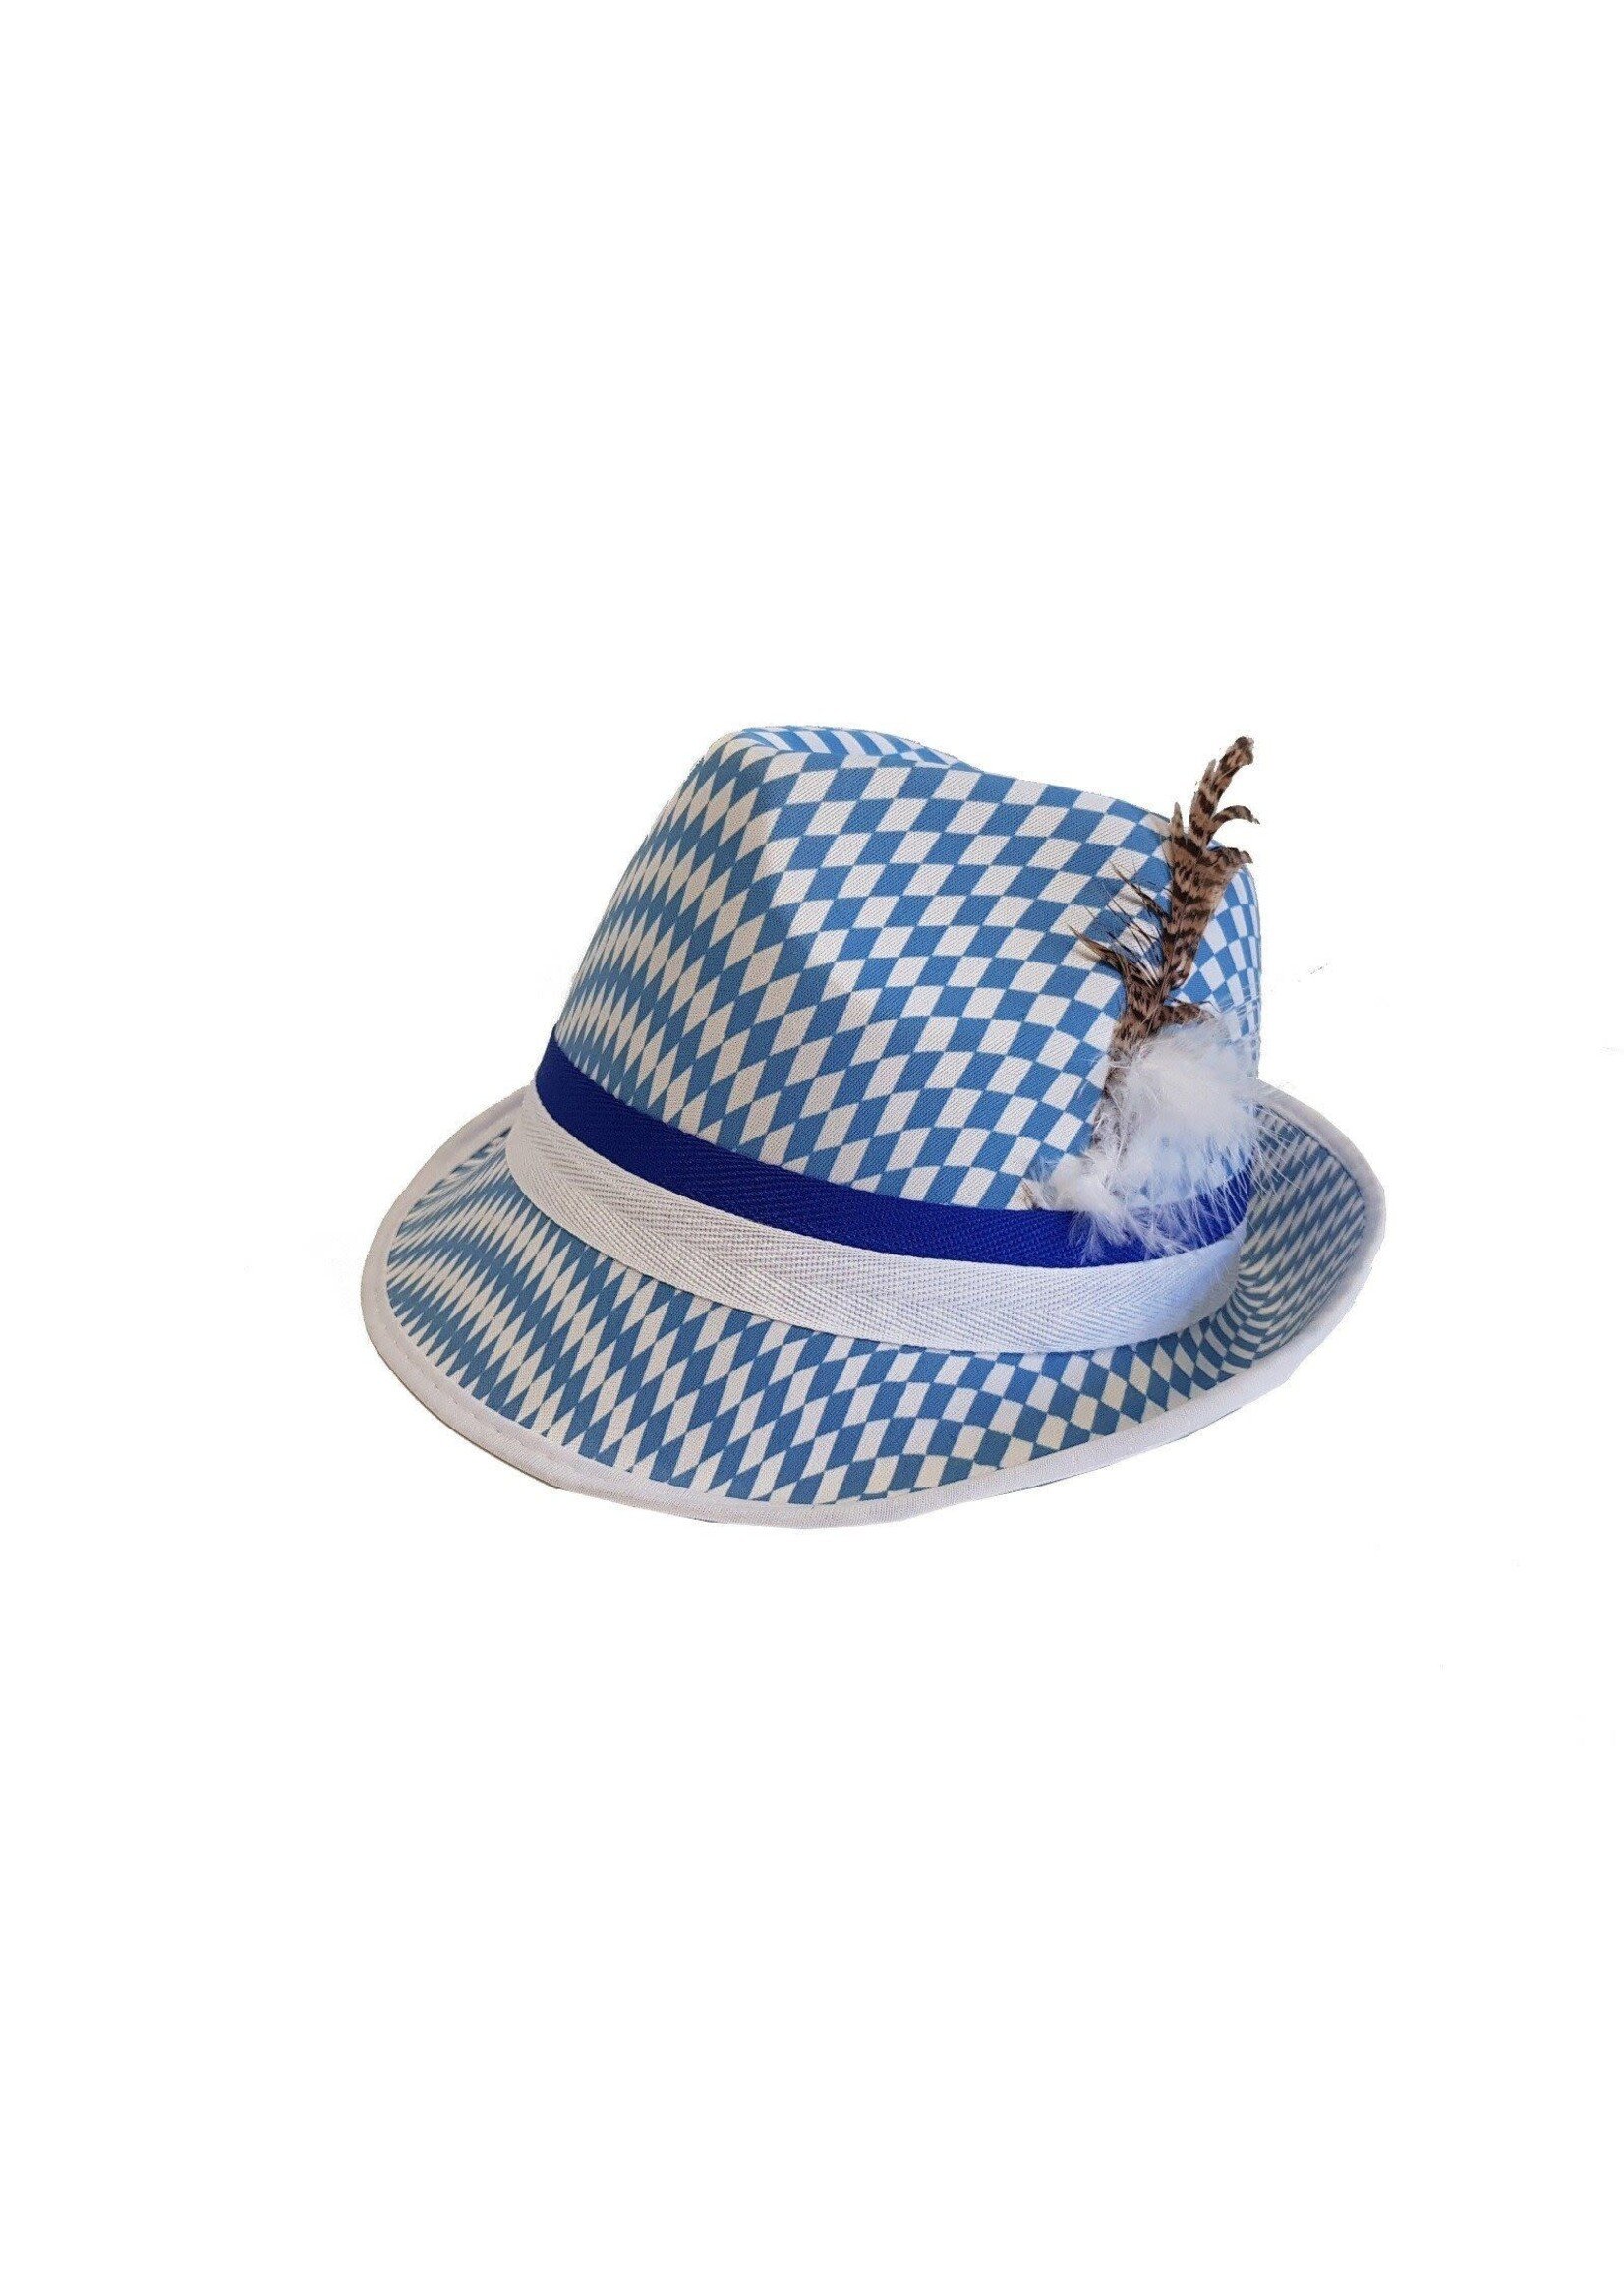 Feestkleding Breda Tiroler hoed blauw wit